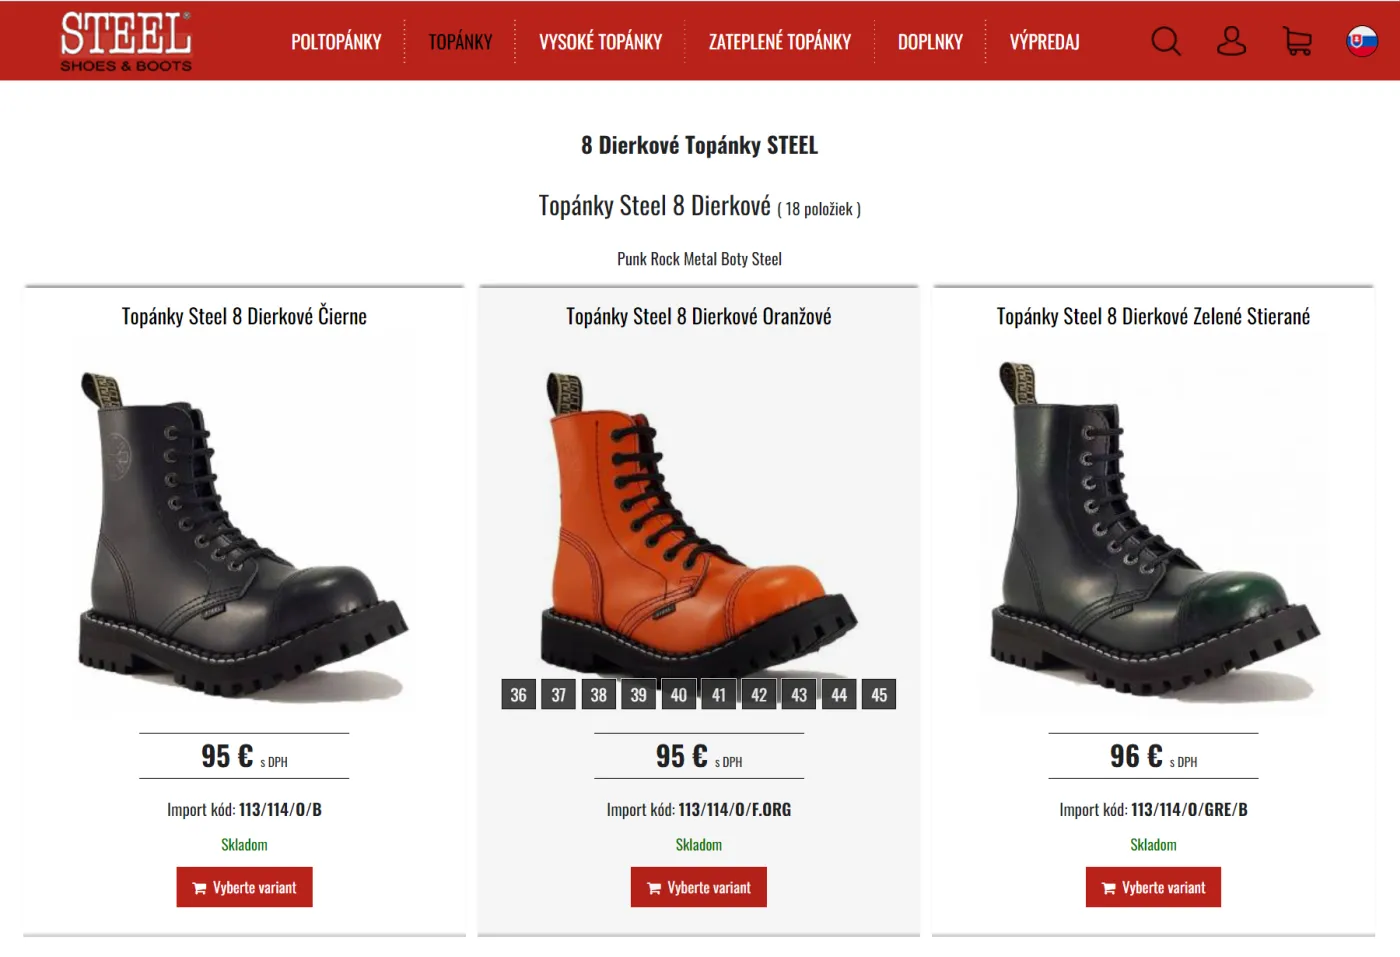 E-shop rýchlo a lacno: vytvorenie shopu na predaj obuvi